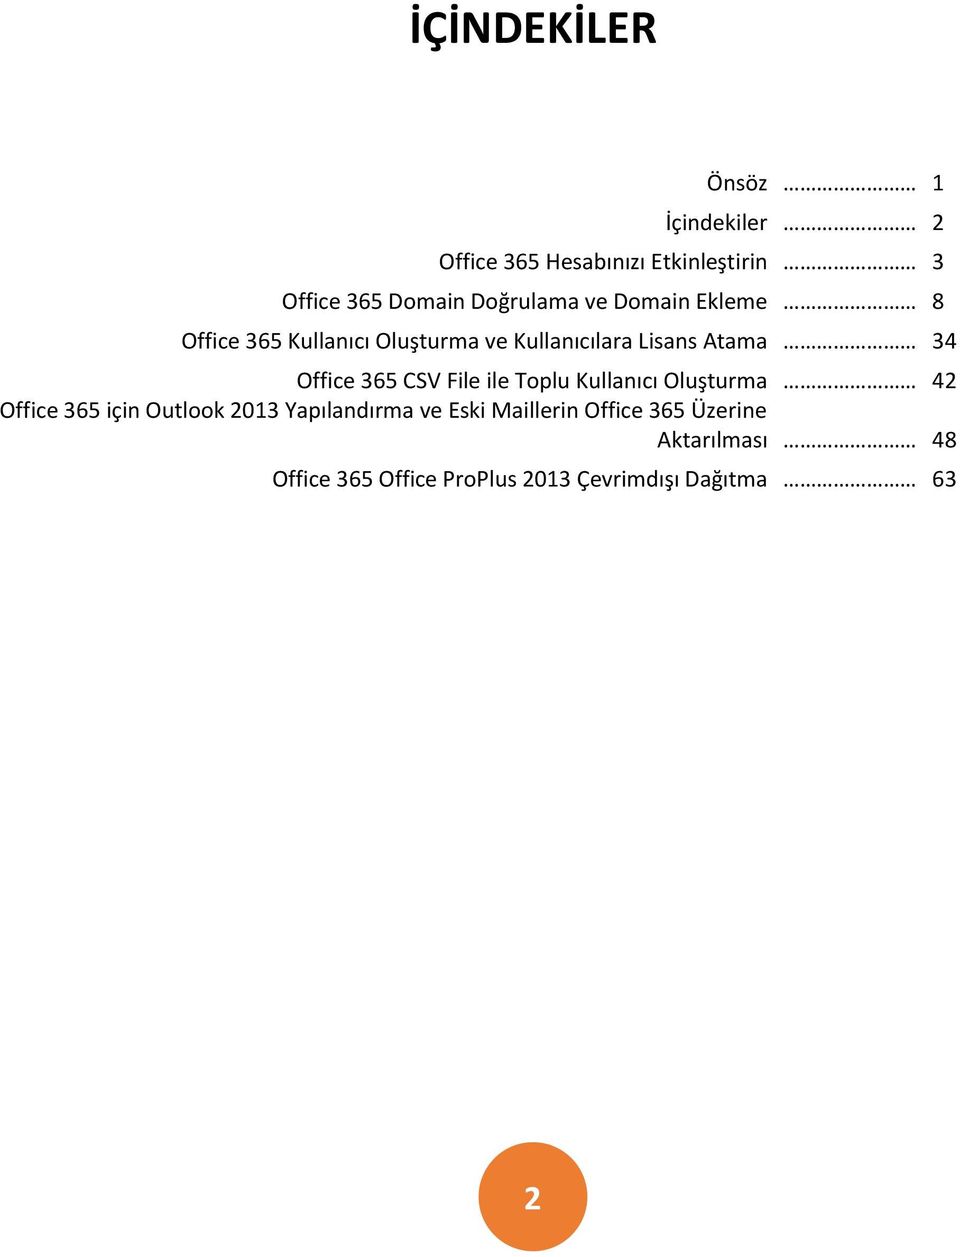 Office 365 CSV File ile Toplu Kullanıcı Oluşturma 42 Office 365 için Outlook 2013 Yapılandırma